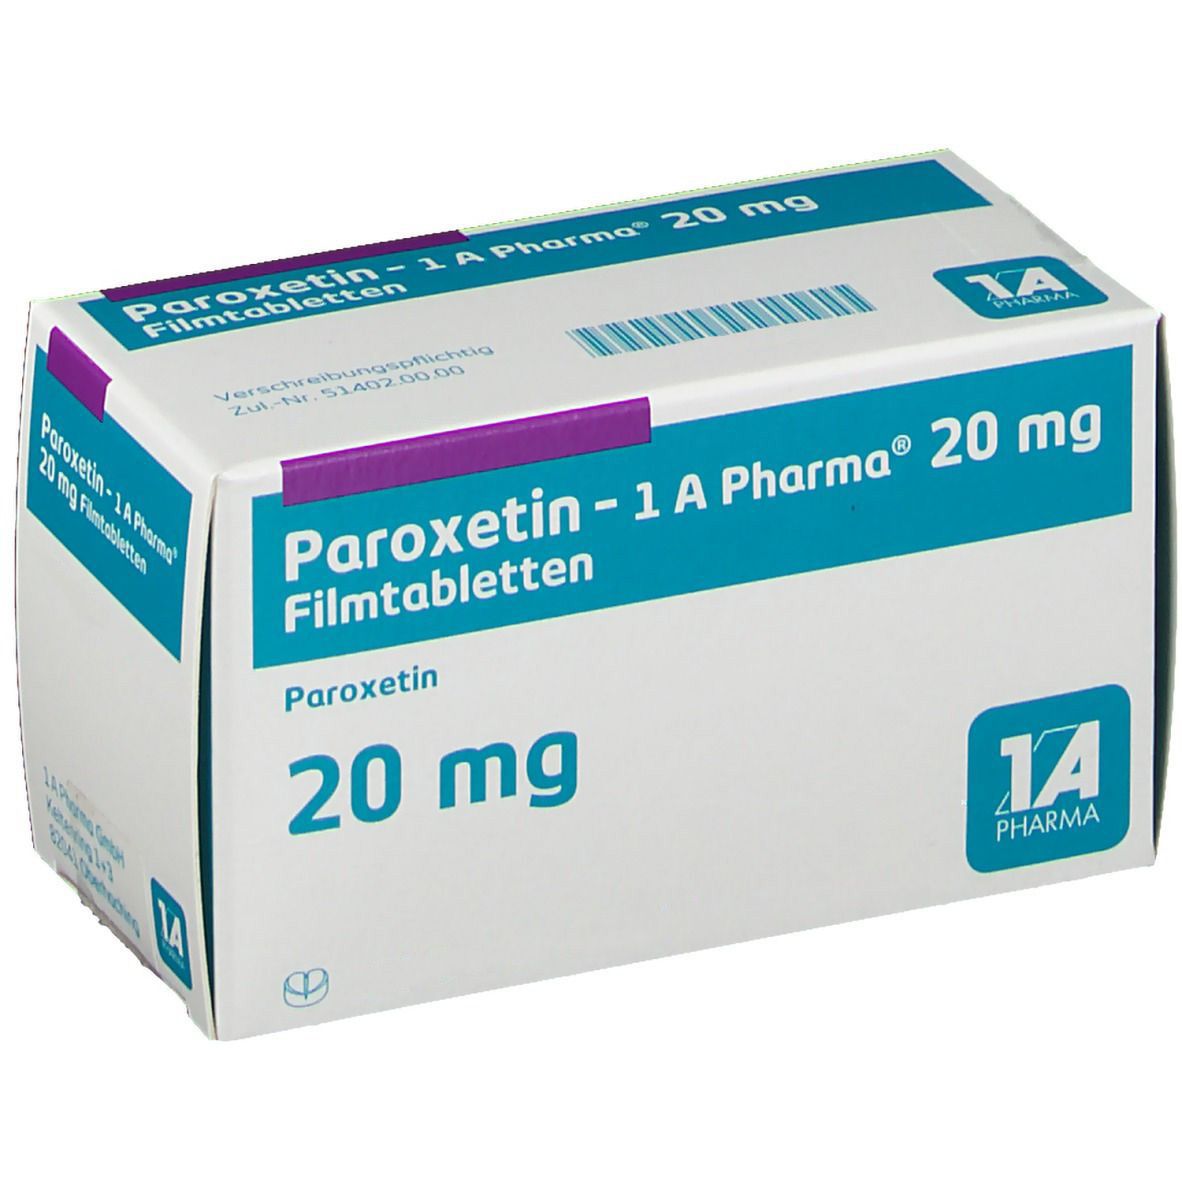 Paroxetin 1A Pharma® 20Mg